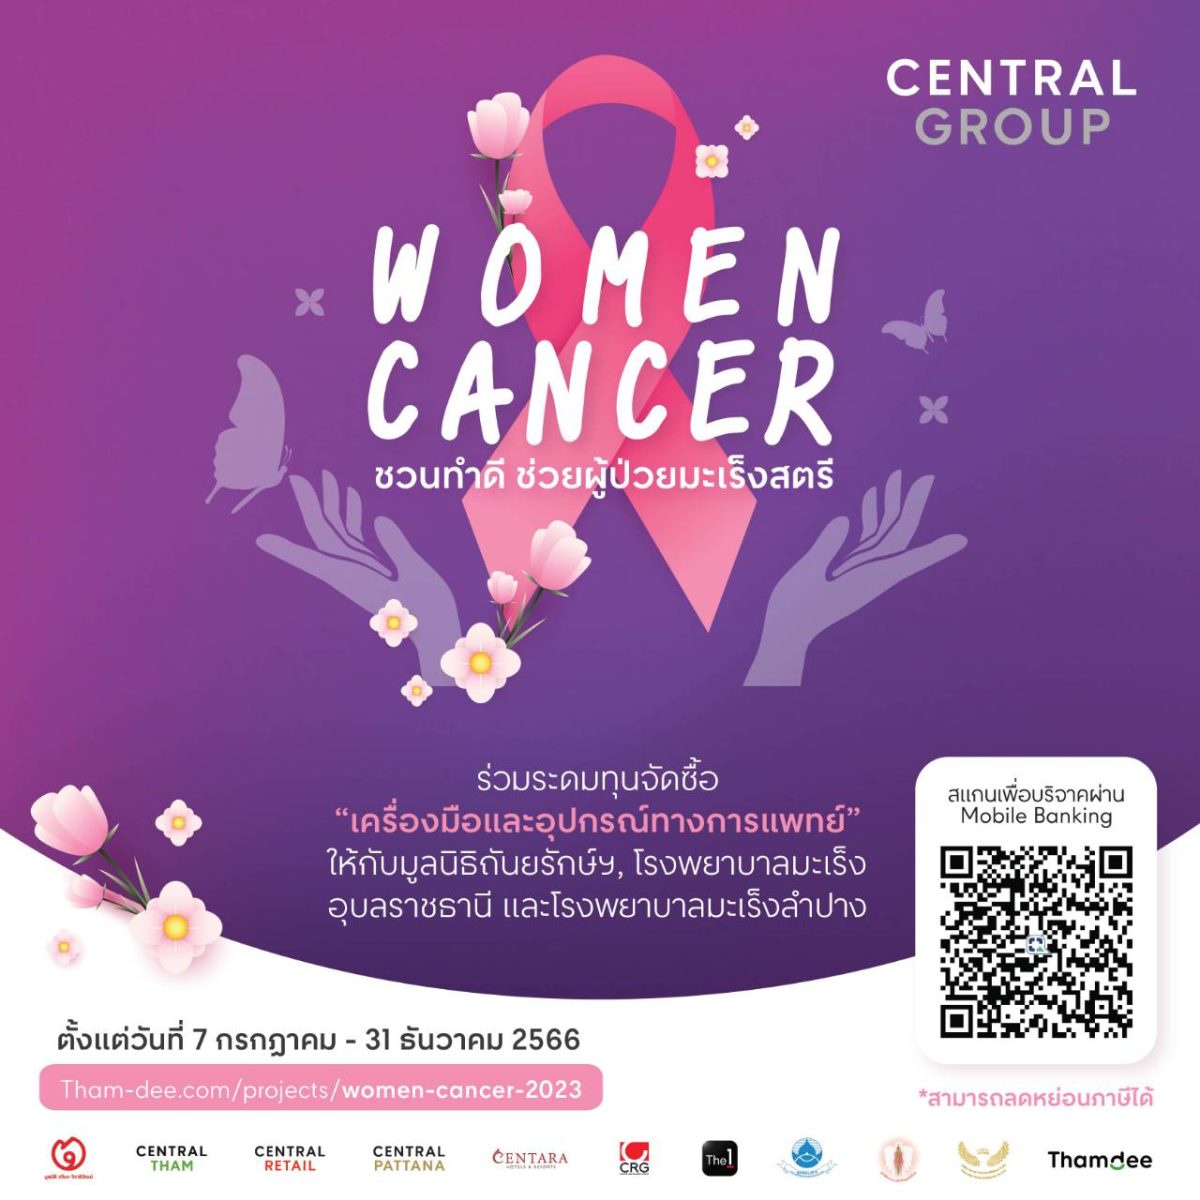 กลุ่มเซ็นทรัล และบริษัทในเครือ ชวนระดมทุนจัดซื้อ เครื่องมือและอุปกรณ์การแพทย์ กับโครงการ Central Group Women Cancer ครั้งที่18